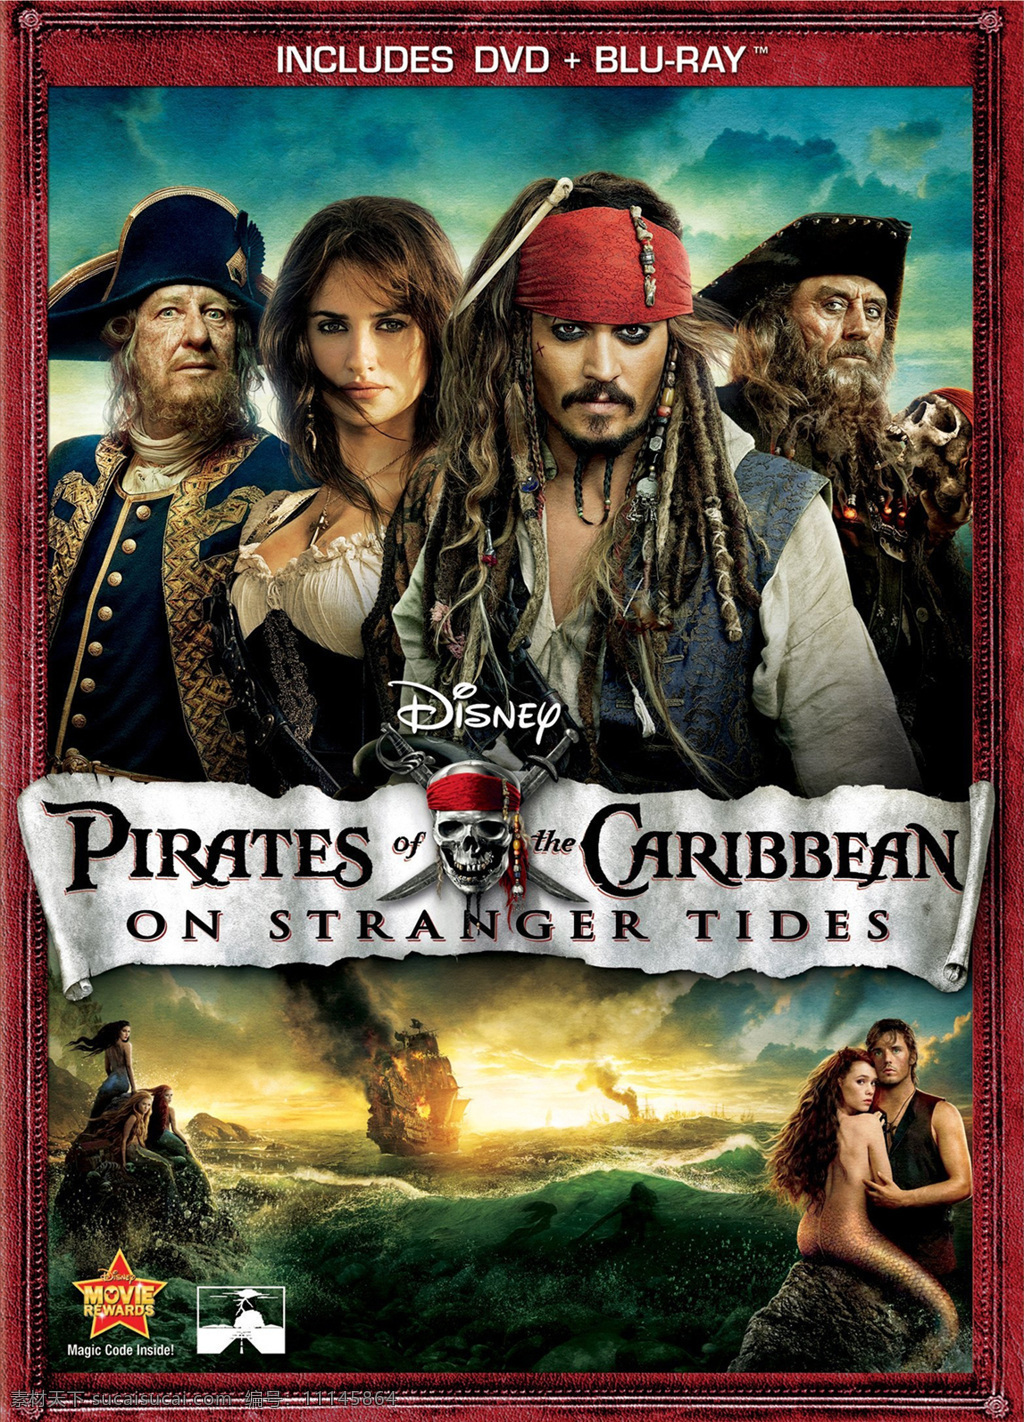 加勒比海盗4 加勒比海盗 海报 招贴 传单 电影海报 杰克 航海 宝藏 海盗 影视娱乐 文化艺术